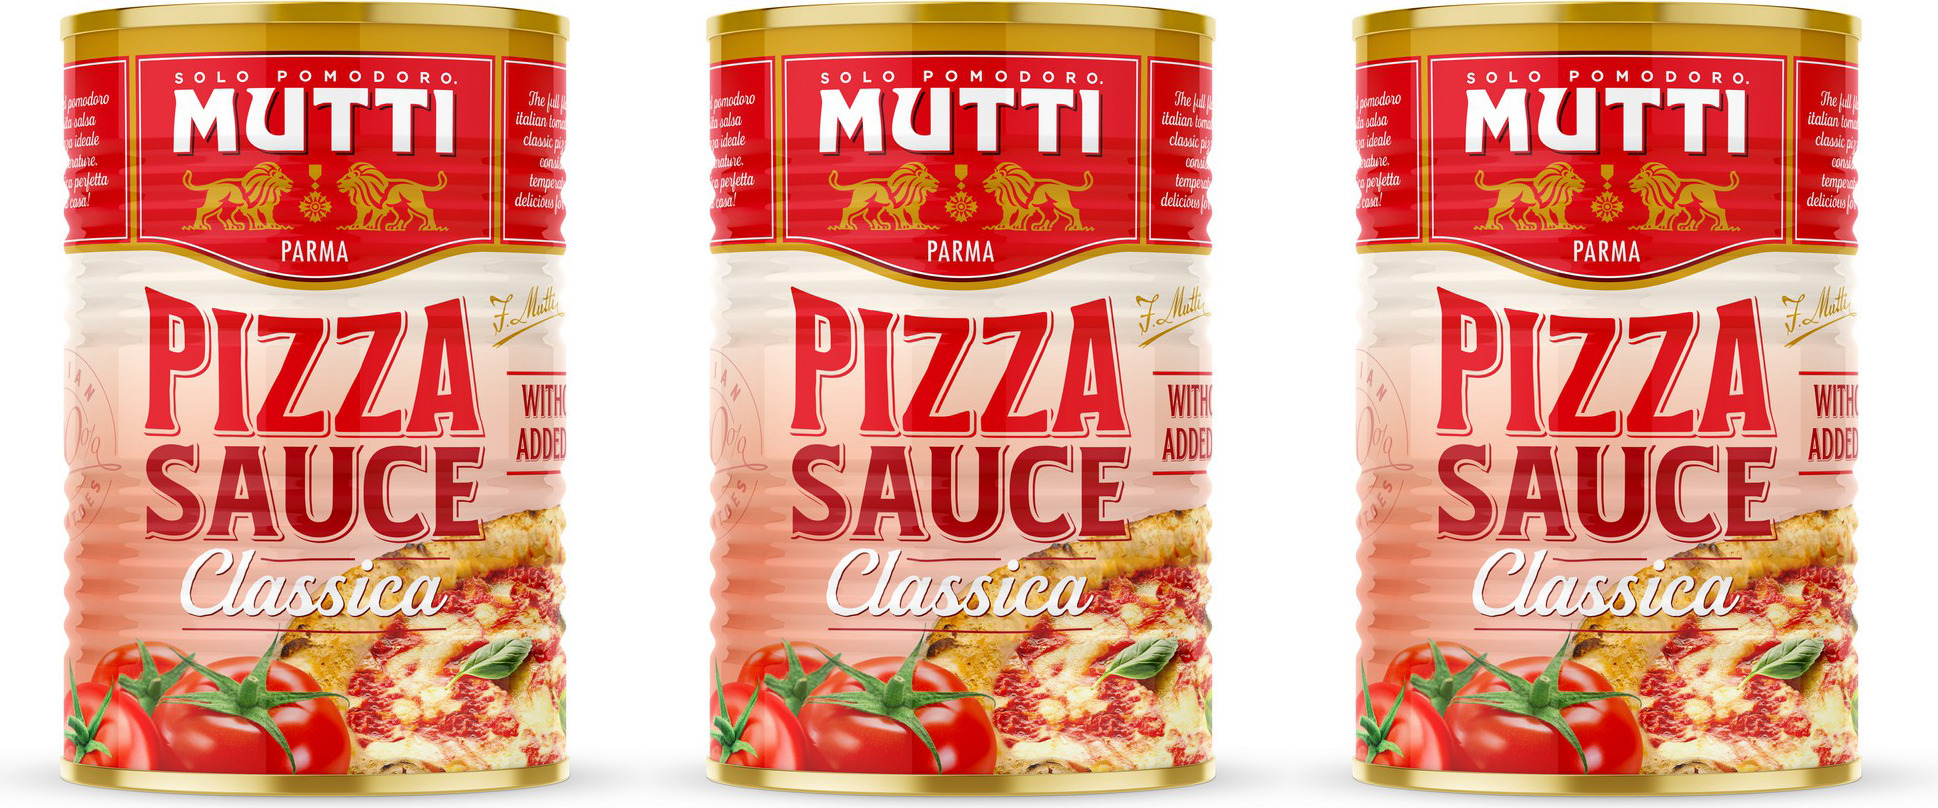 mutti томатный соус для пиццы ароматизированный 400 г купить фото 119